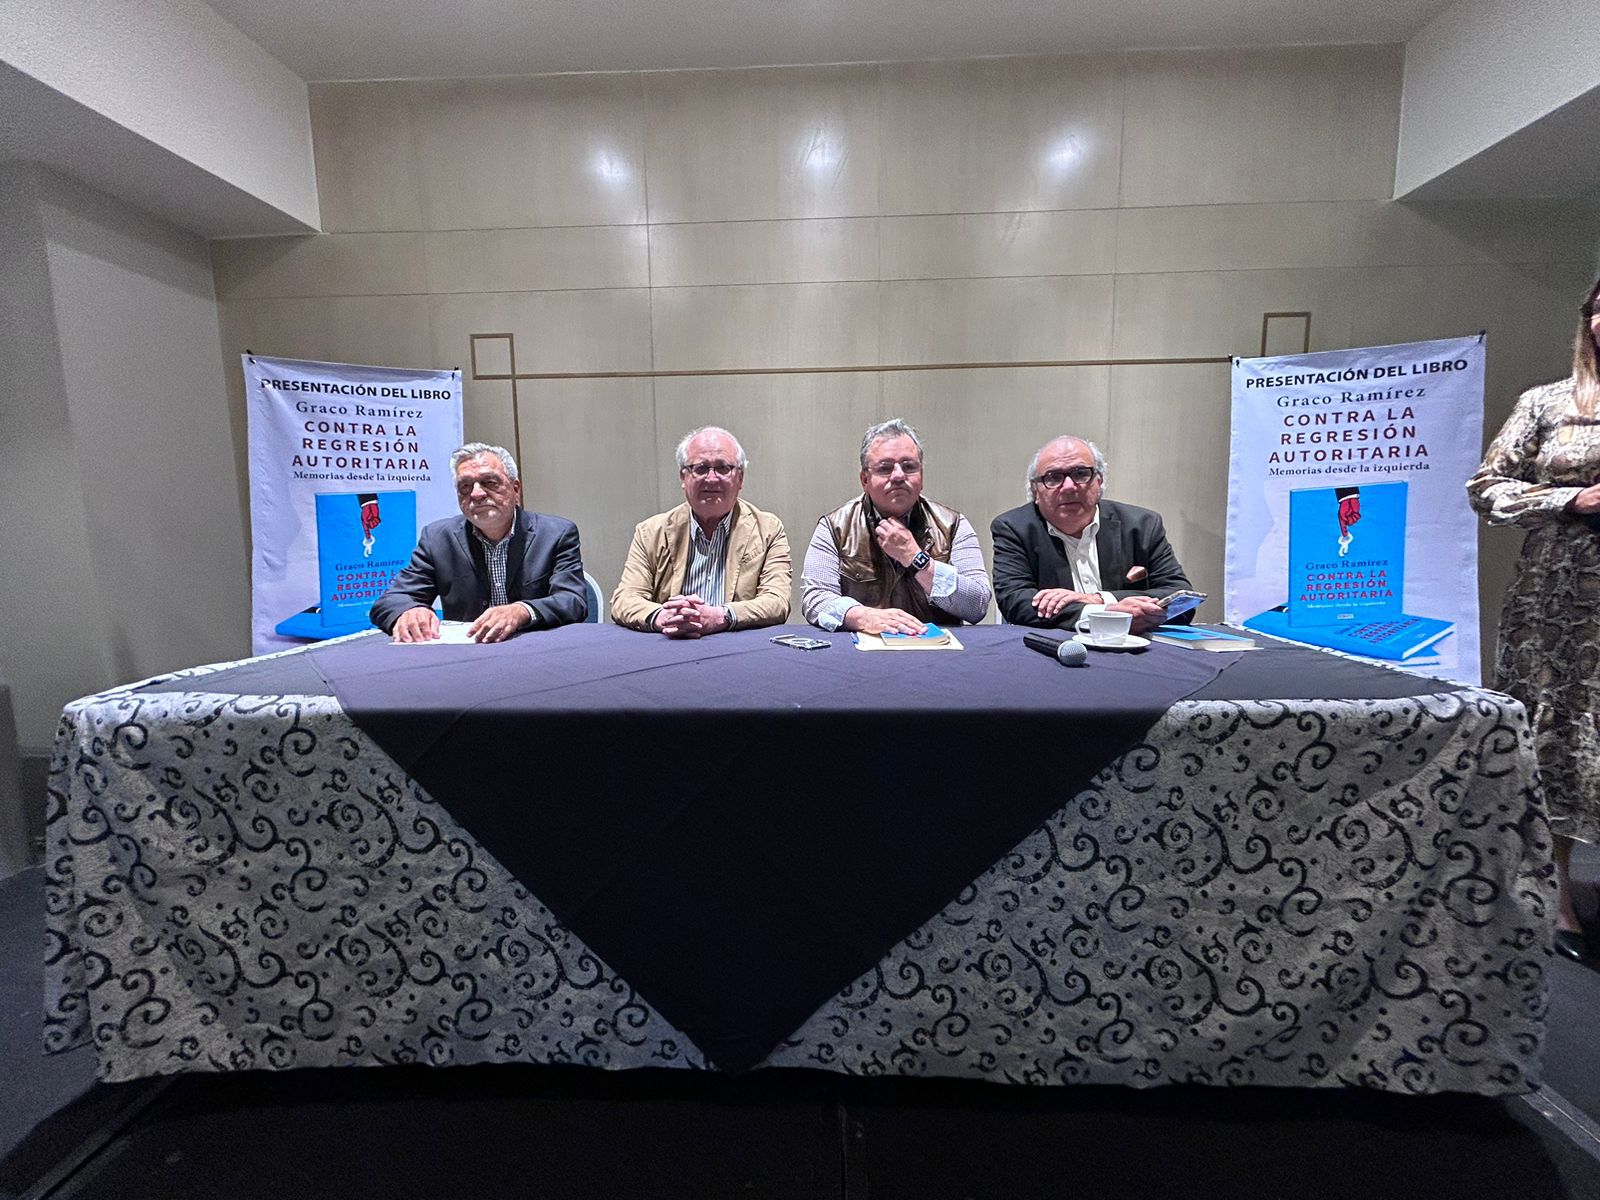 Graco Ramírez presentó su libro “Contra la regresión autoritaria memorias desde la izquierda”